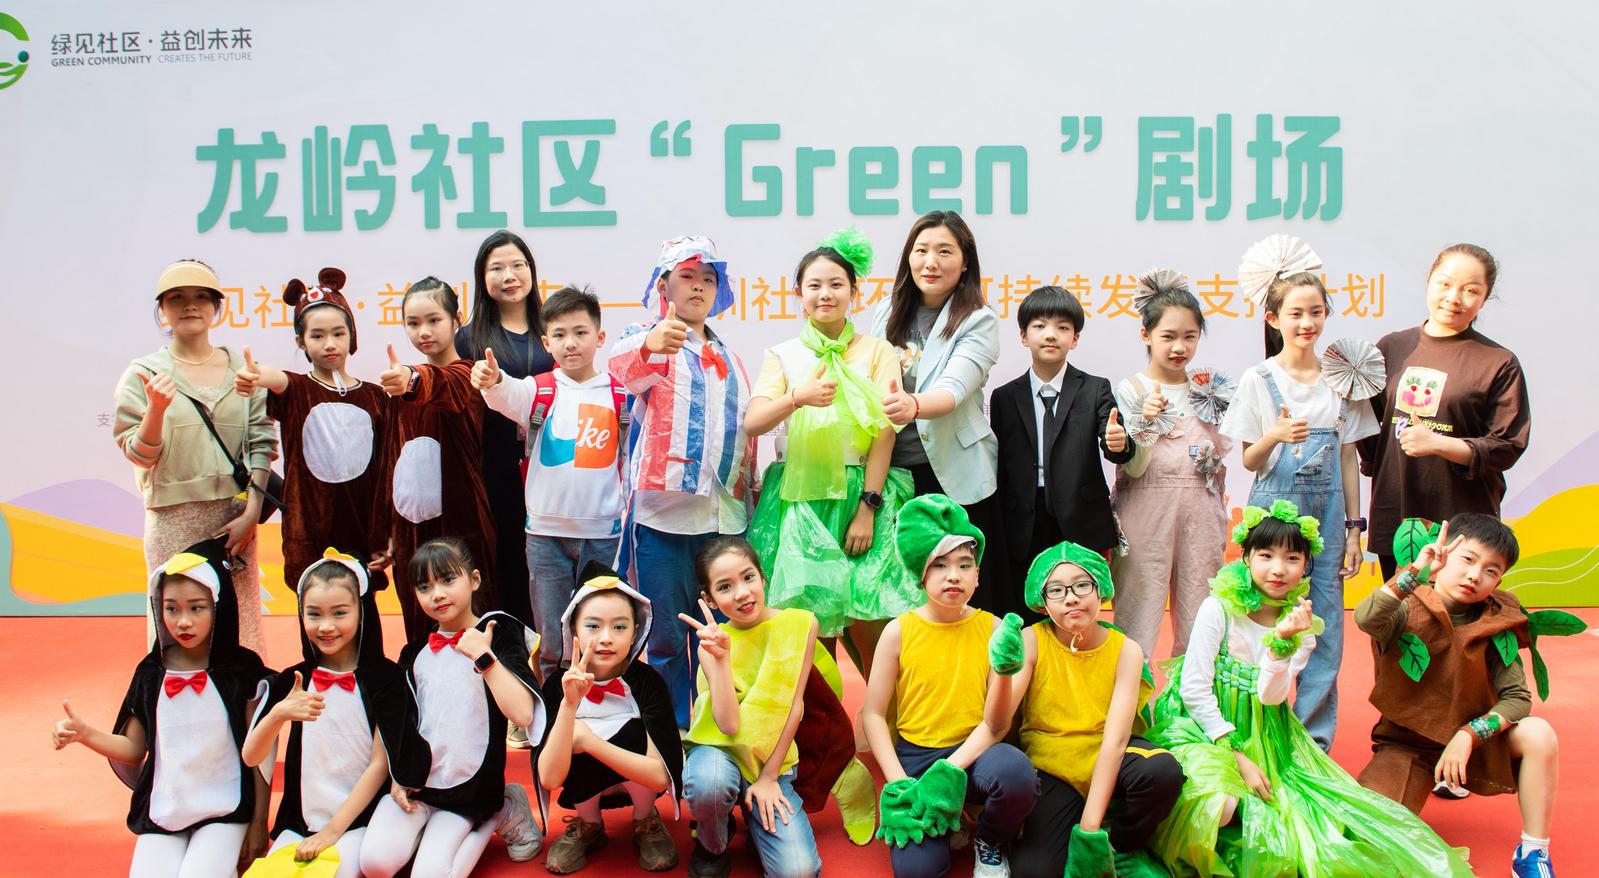 龙岭社区举行“Green”剧场主题展演活动